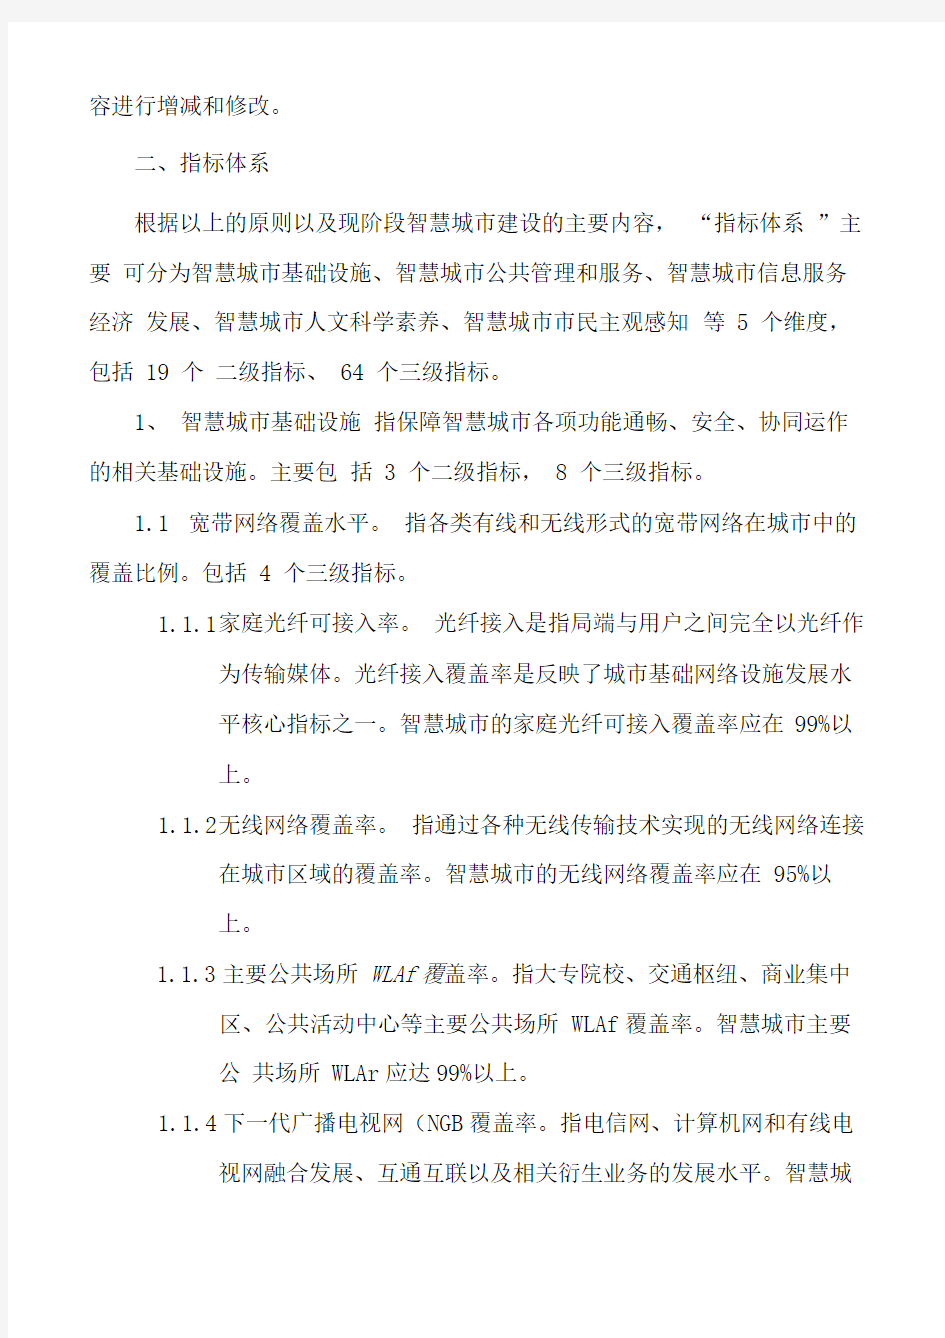 上海智慧城市指标体系完整版1